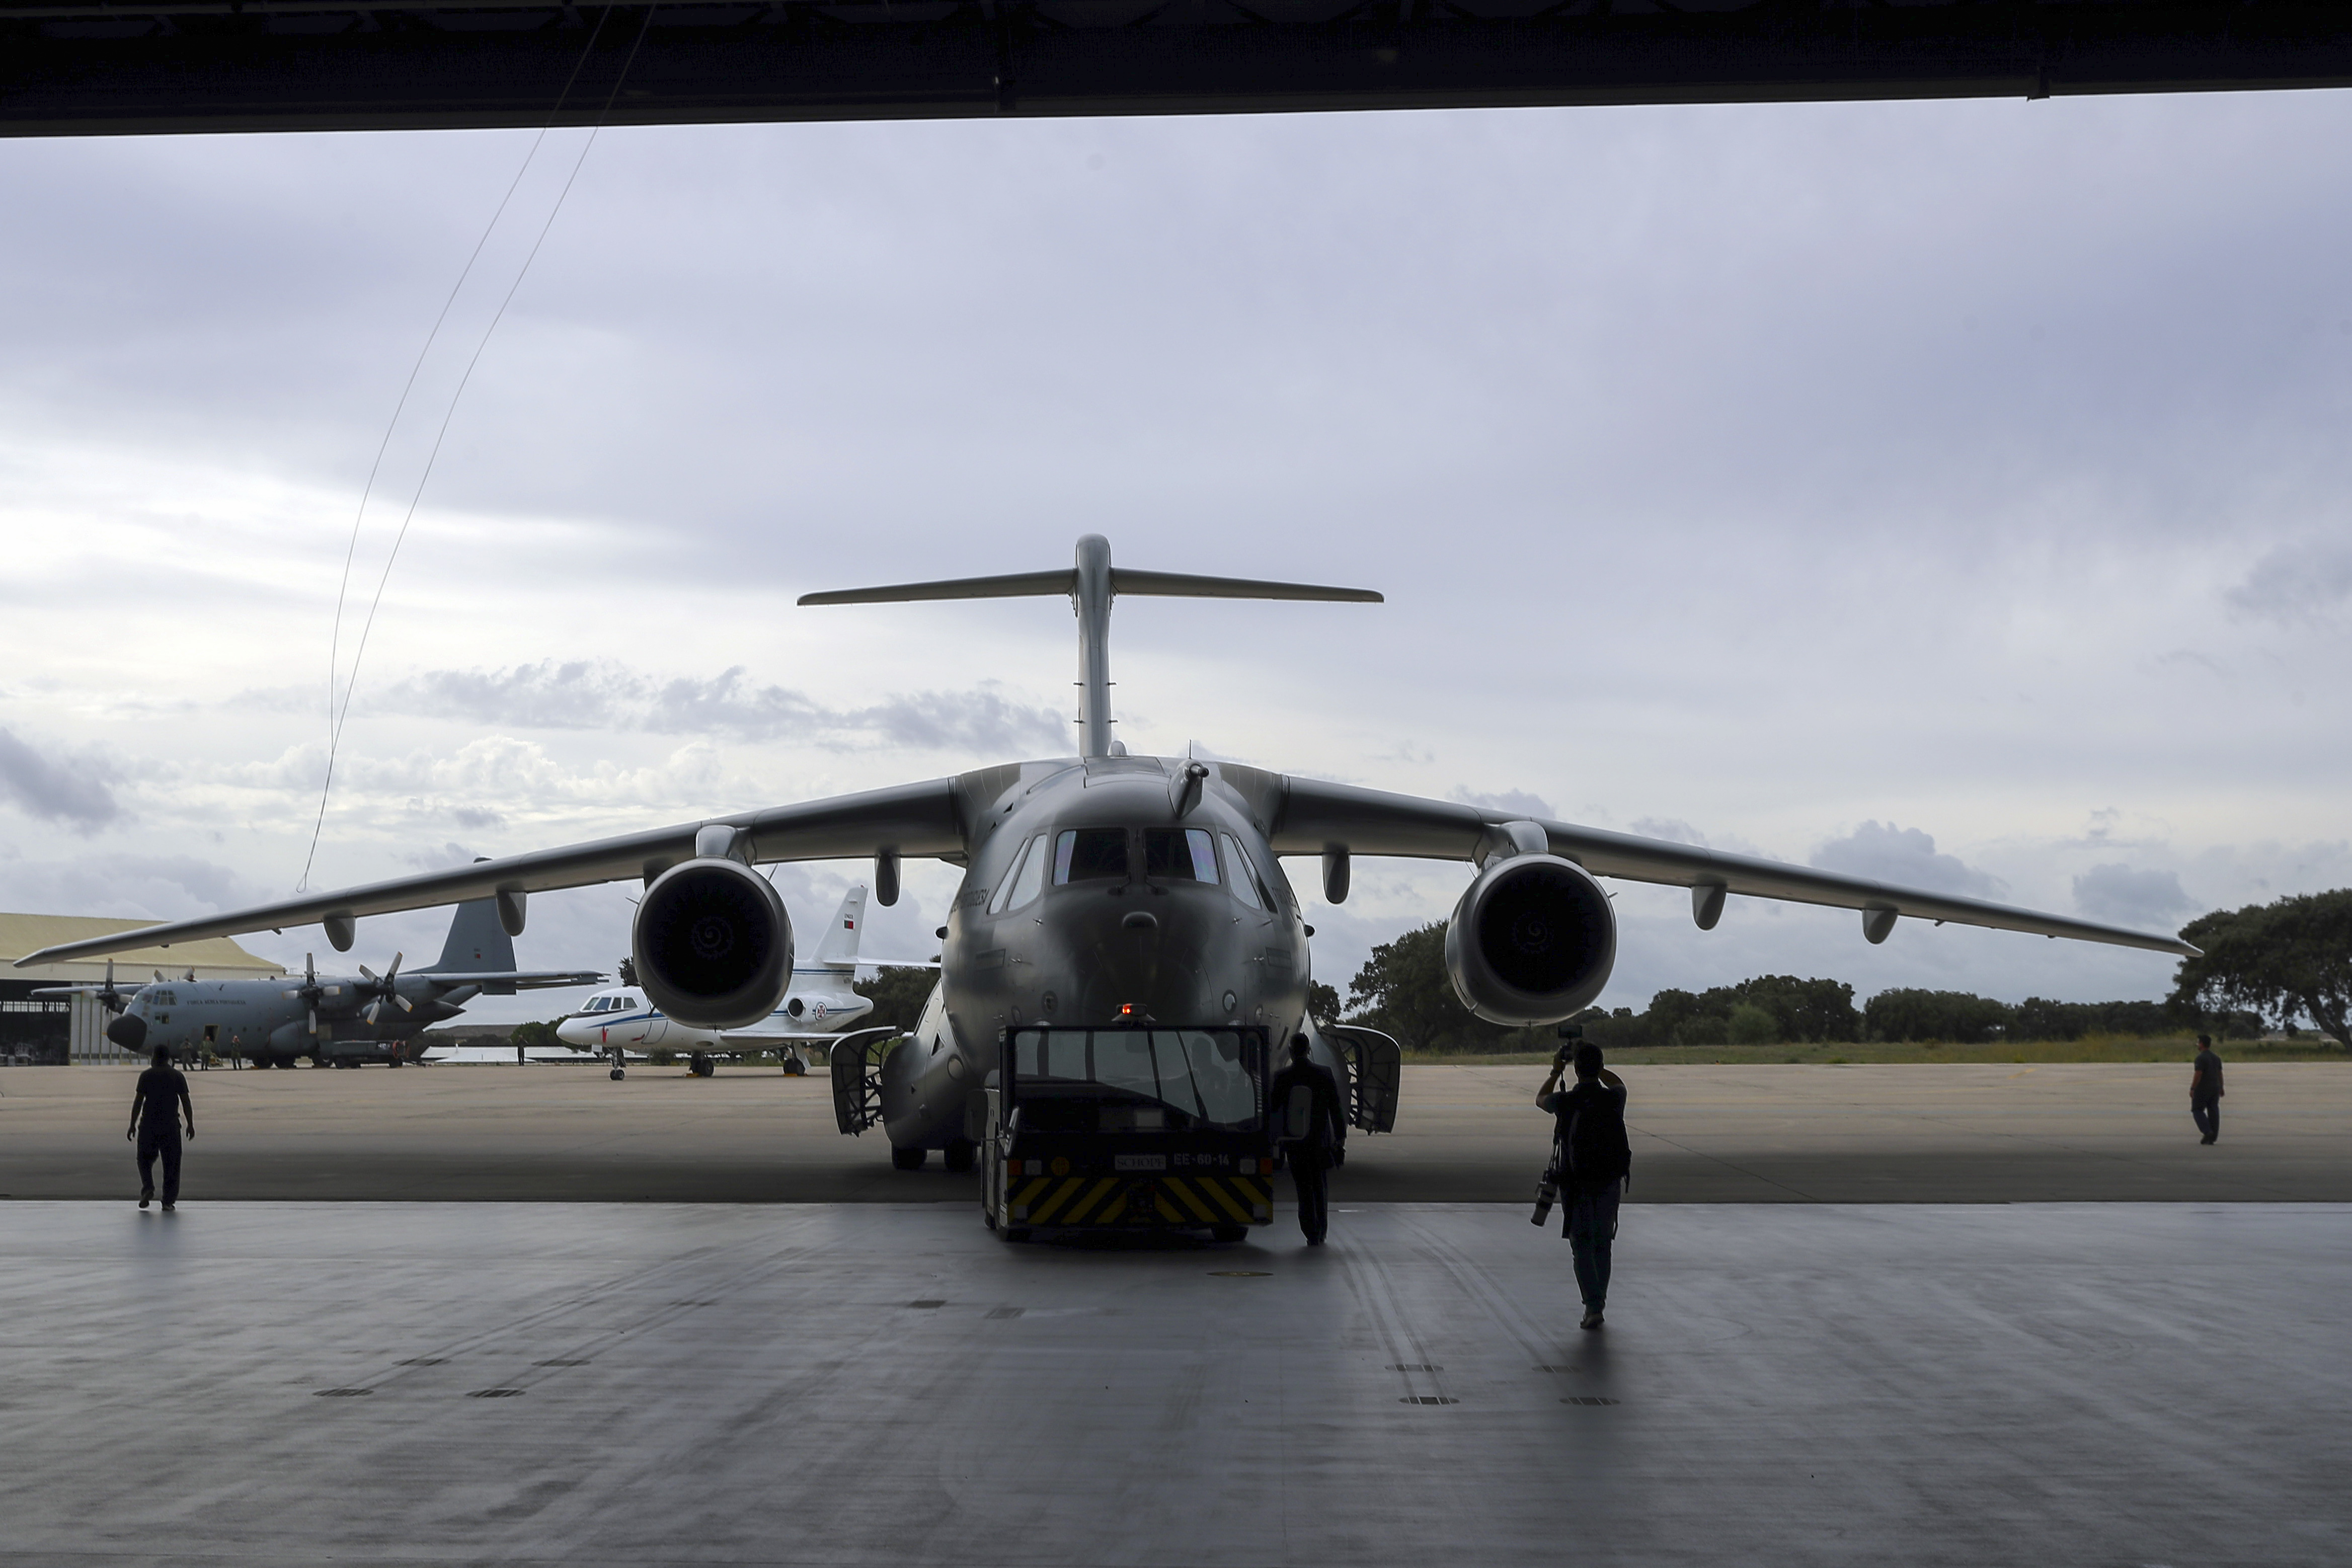 Primeiro avião KC-390 chegou hoje à base aérea de Beja (c/vídeo)